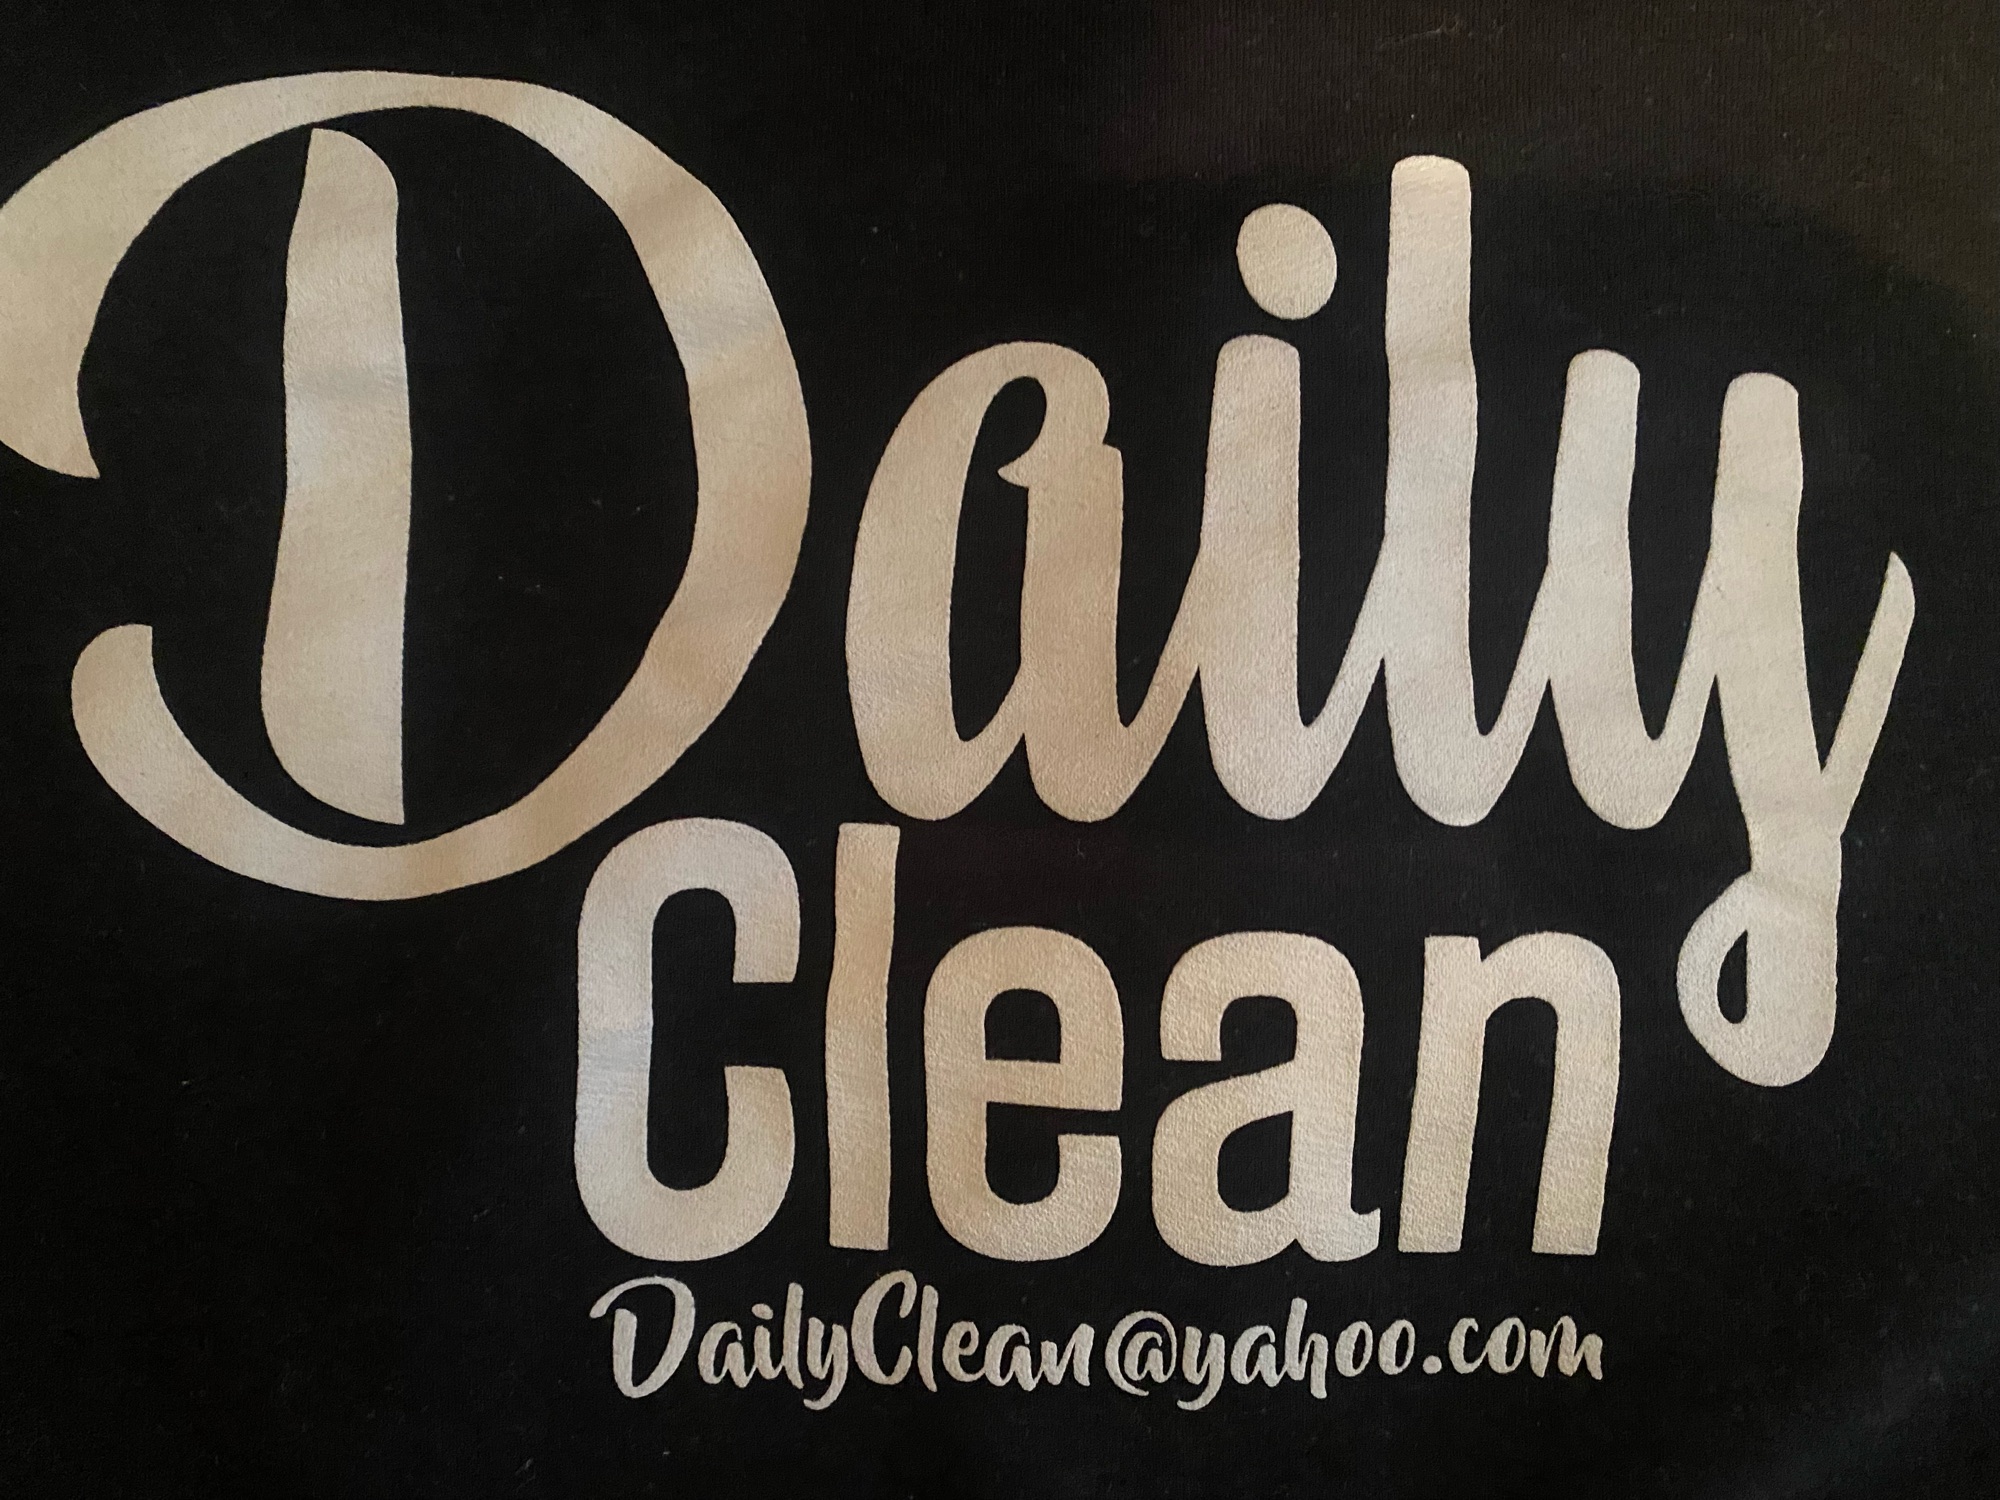 Daily Clean Logo